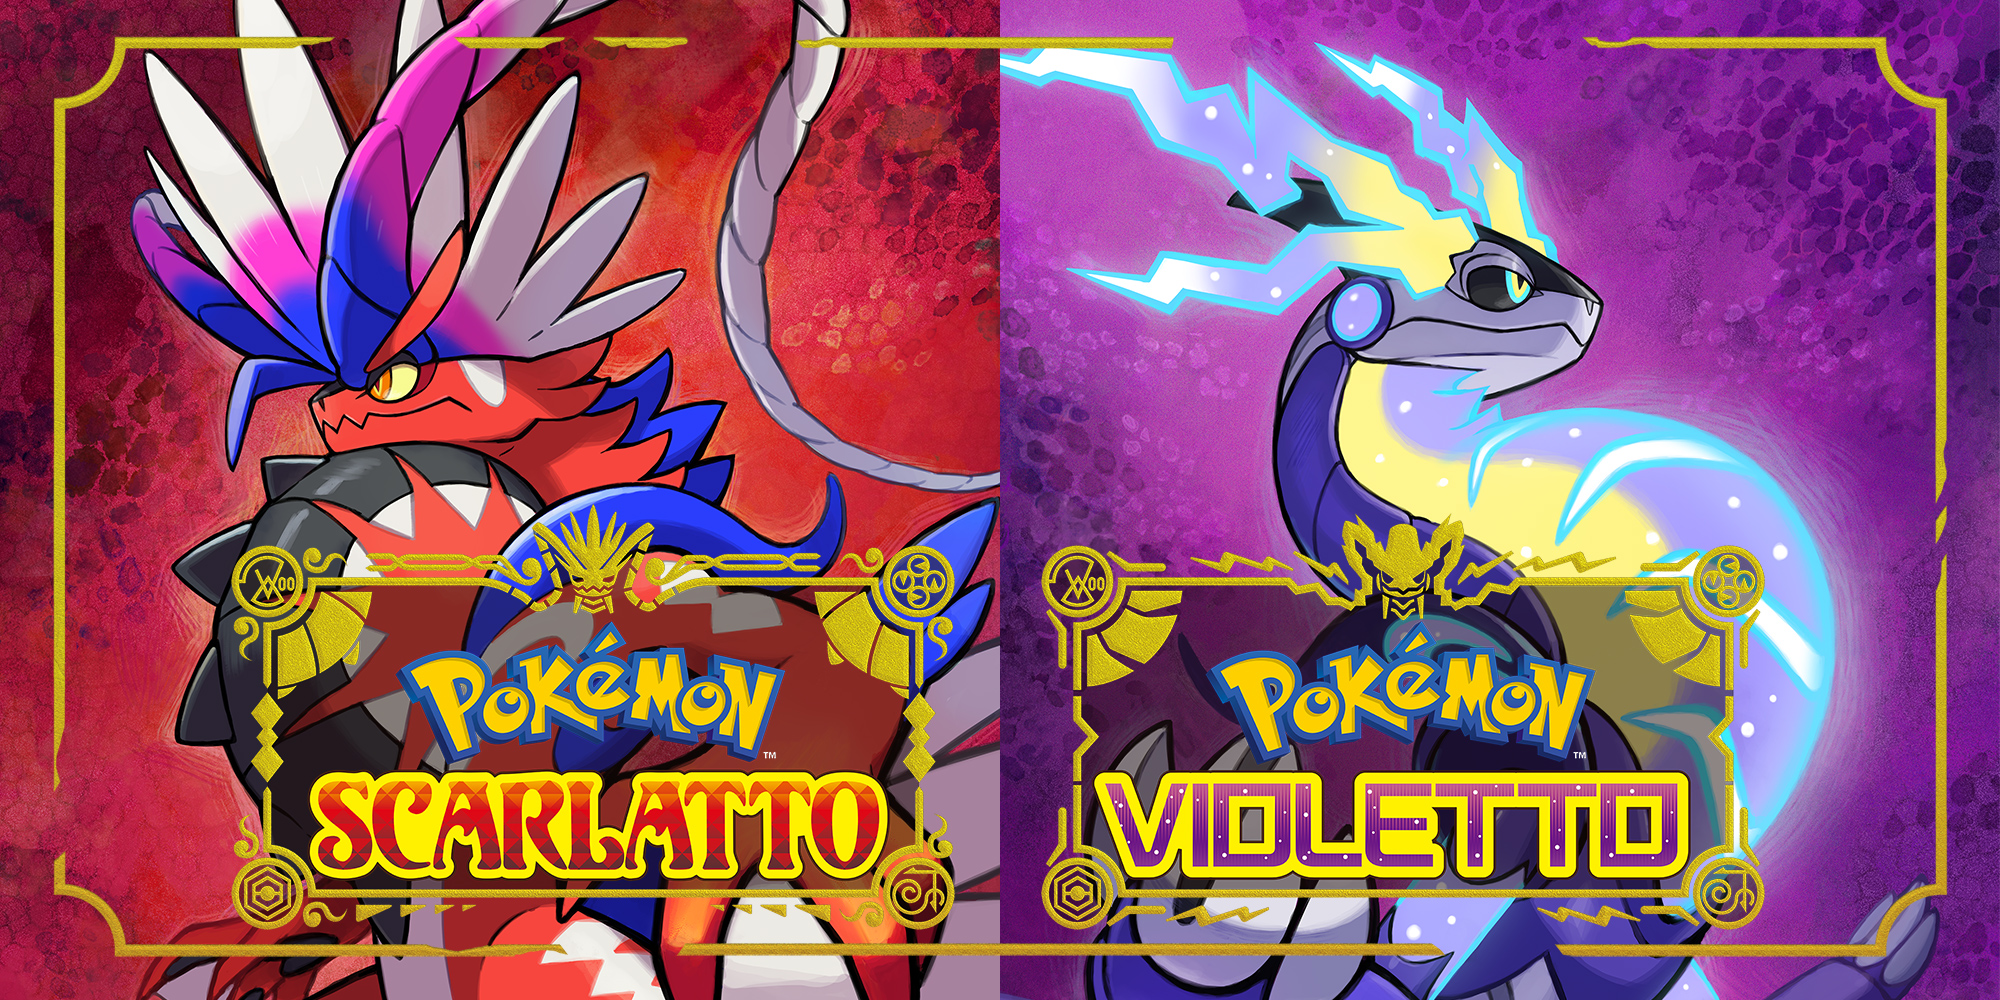 Pokémon Scarlatto e Violetto: versione 1.1.0 in arrivo oggi. Nintendo si scusa per i problemi tecnici